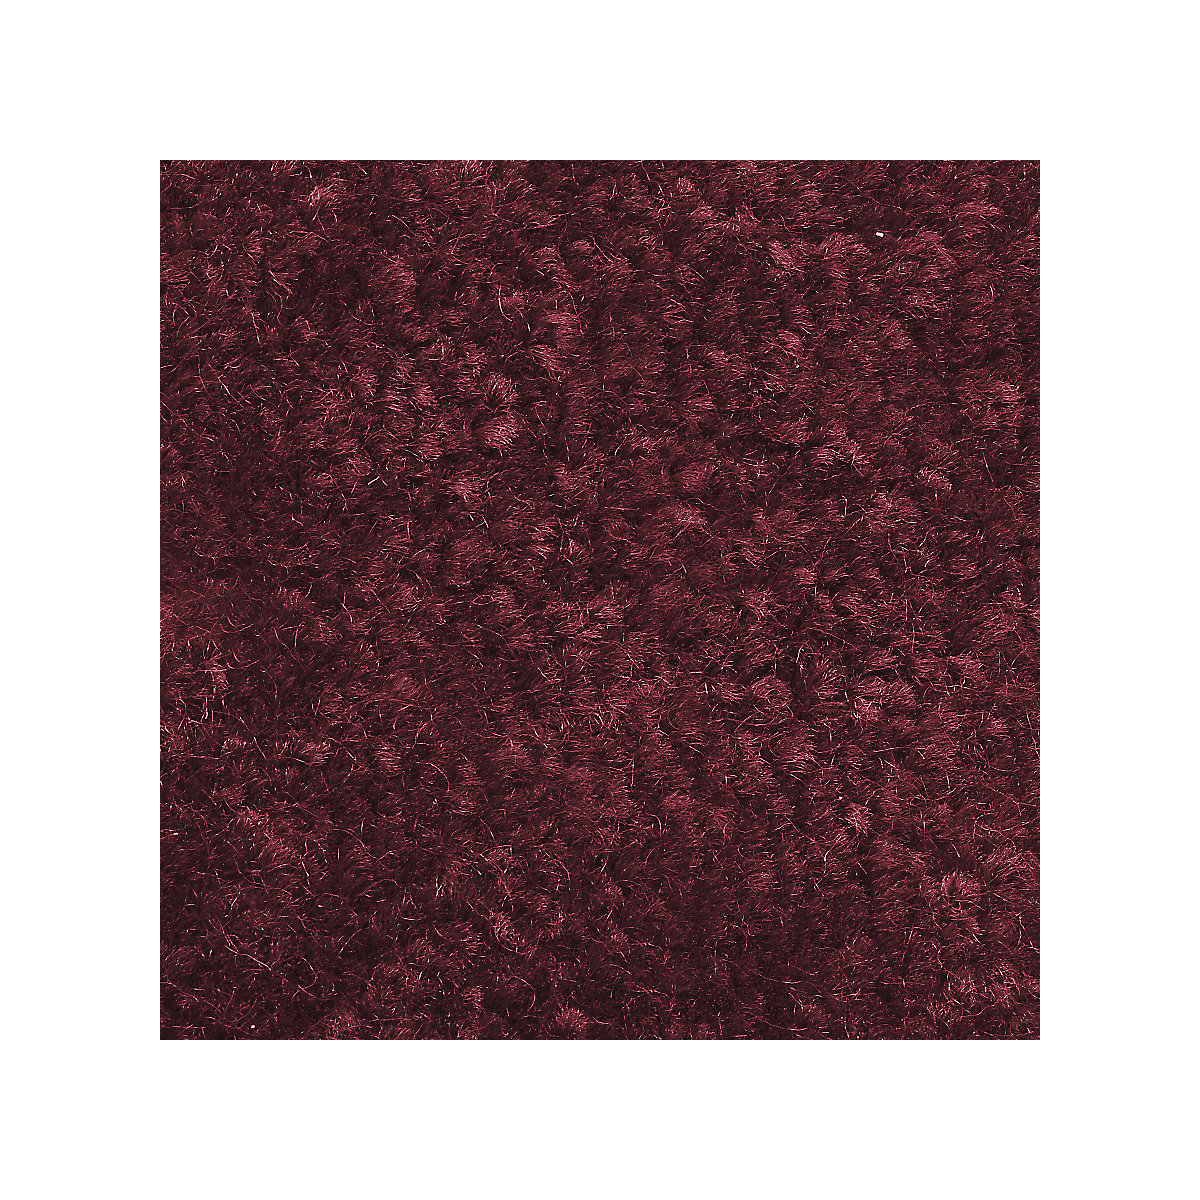 Mata wychwytująca brud do stosowania wewnątrz, runo z polipropylenu, dł. x szer. 900 x 600 mm, opak. 2 szt., czerwony